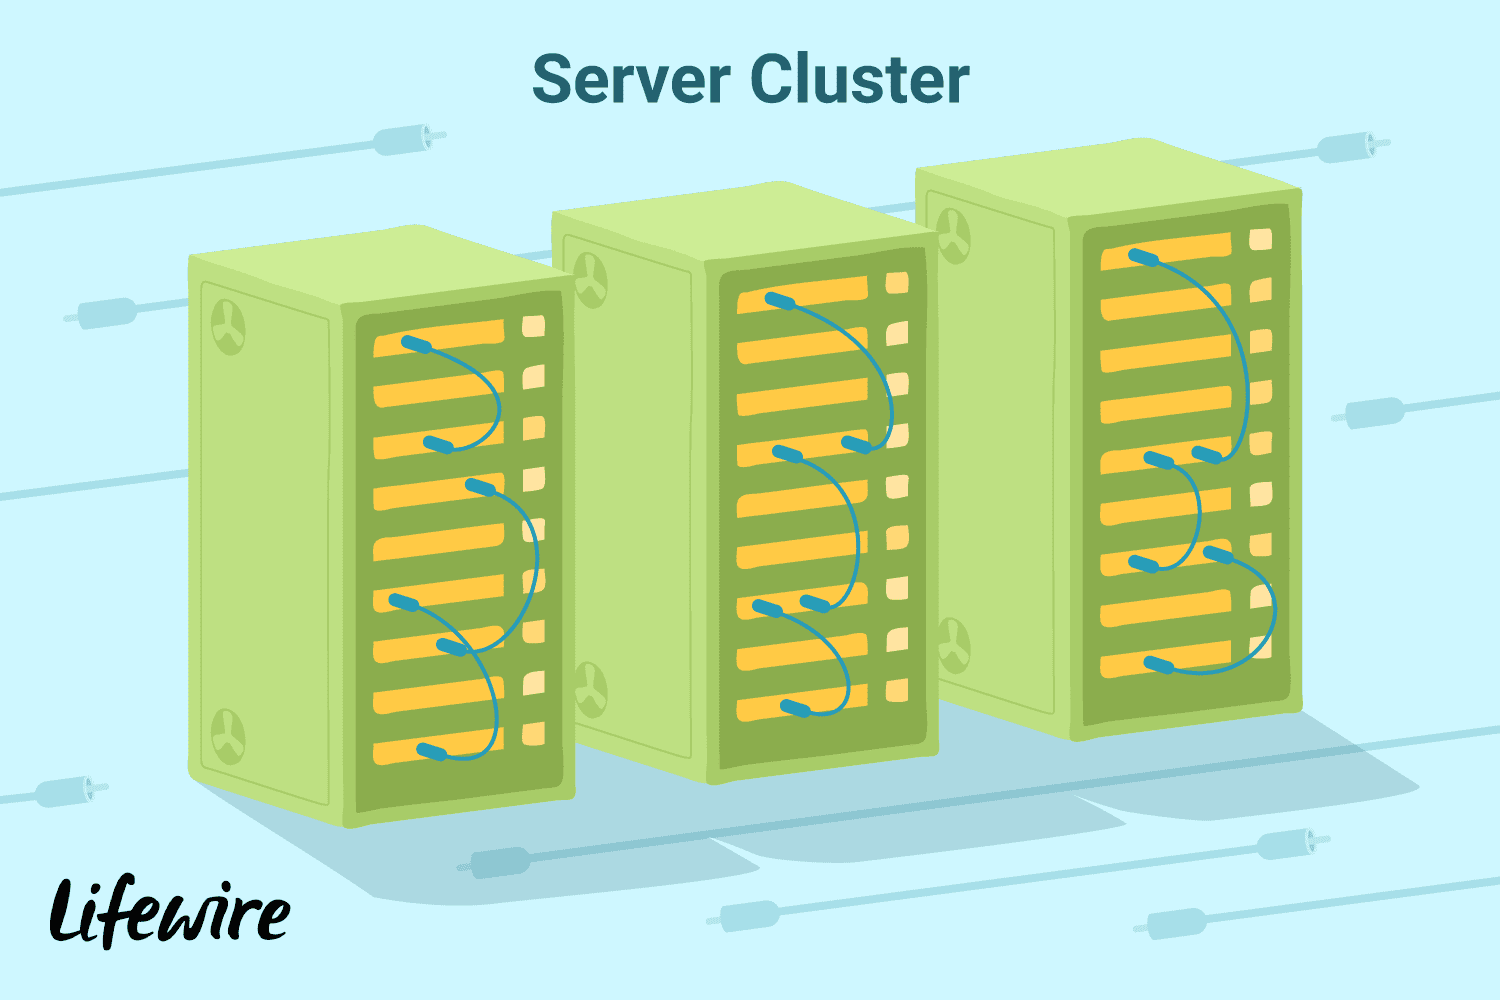 Иллюстрация кластера серверов.